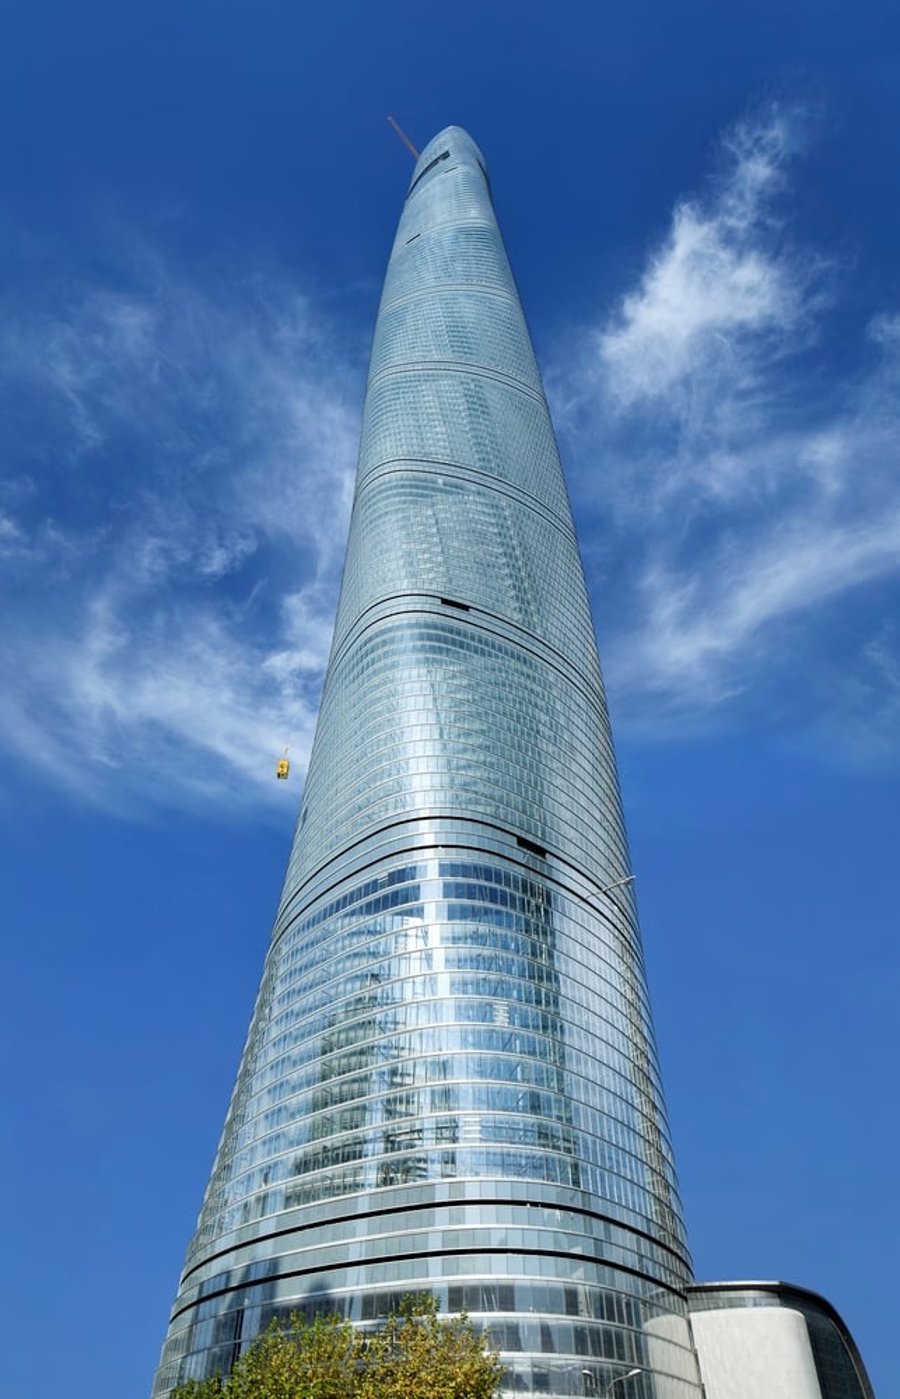 המגדל בשנגחאי הוכרז כבניין היפה ביותר בעולם